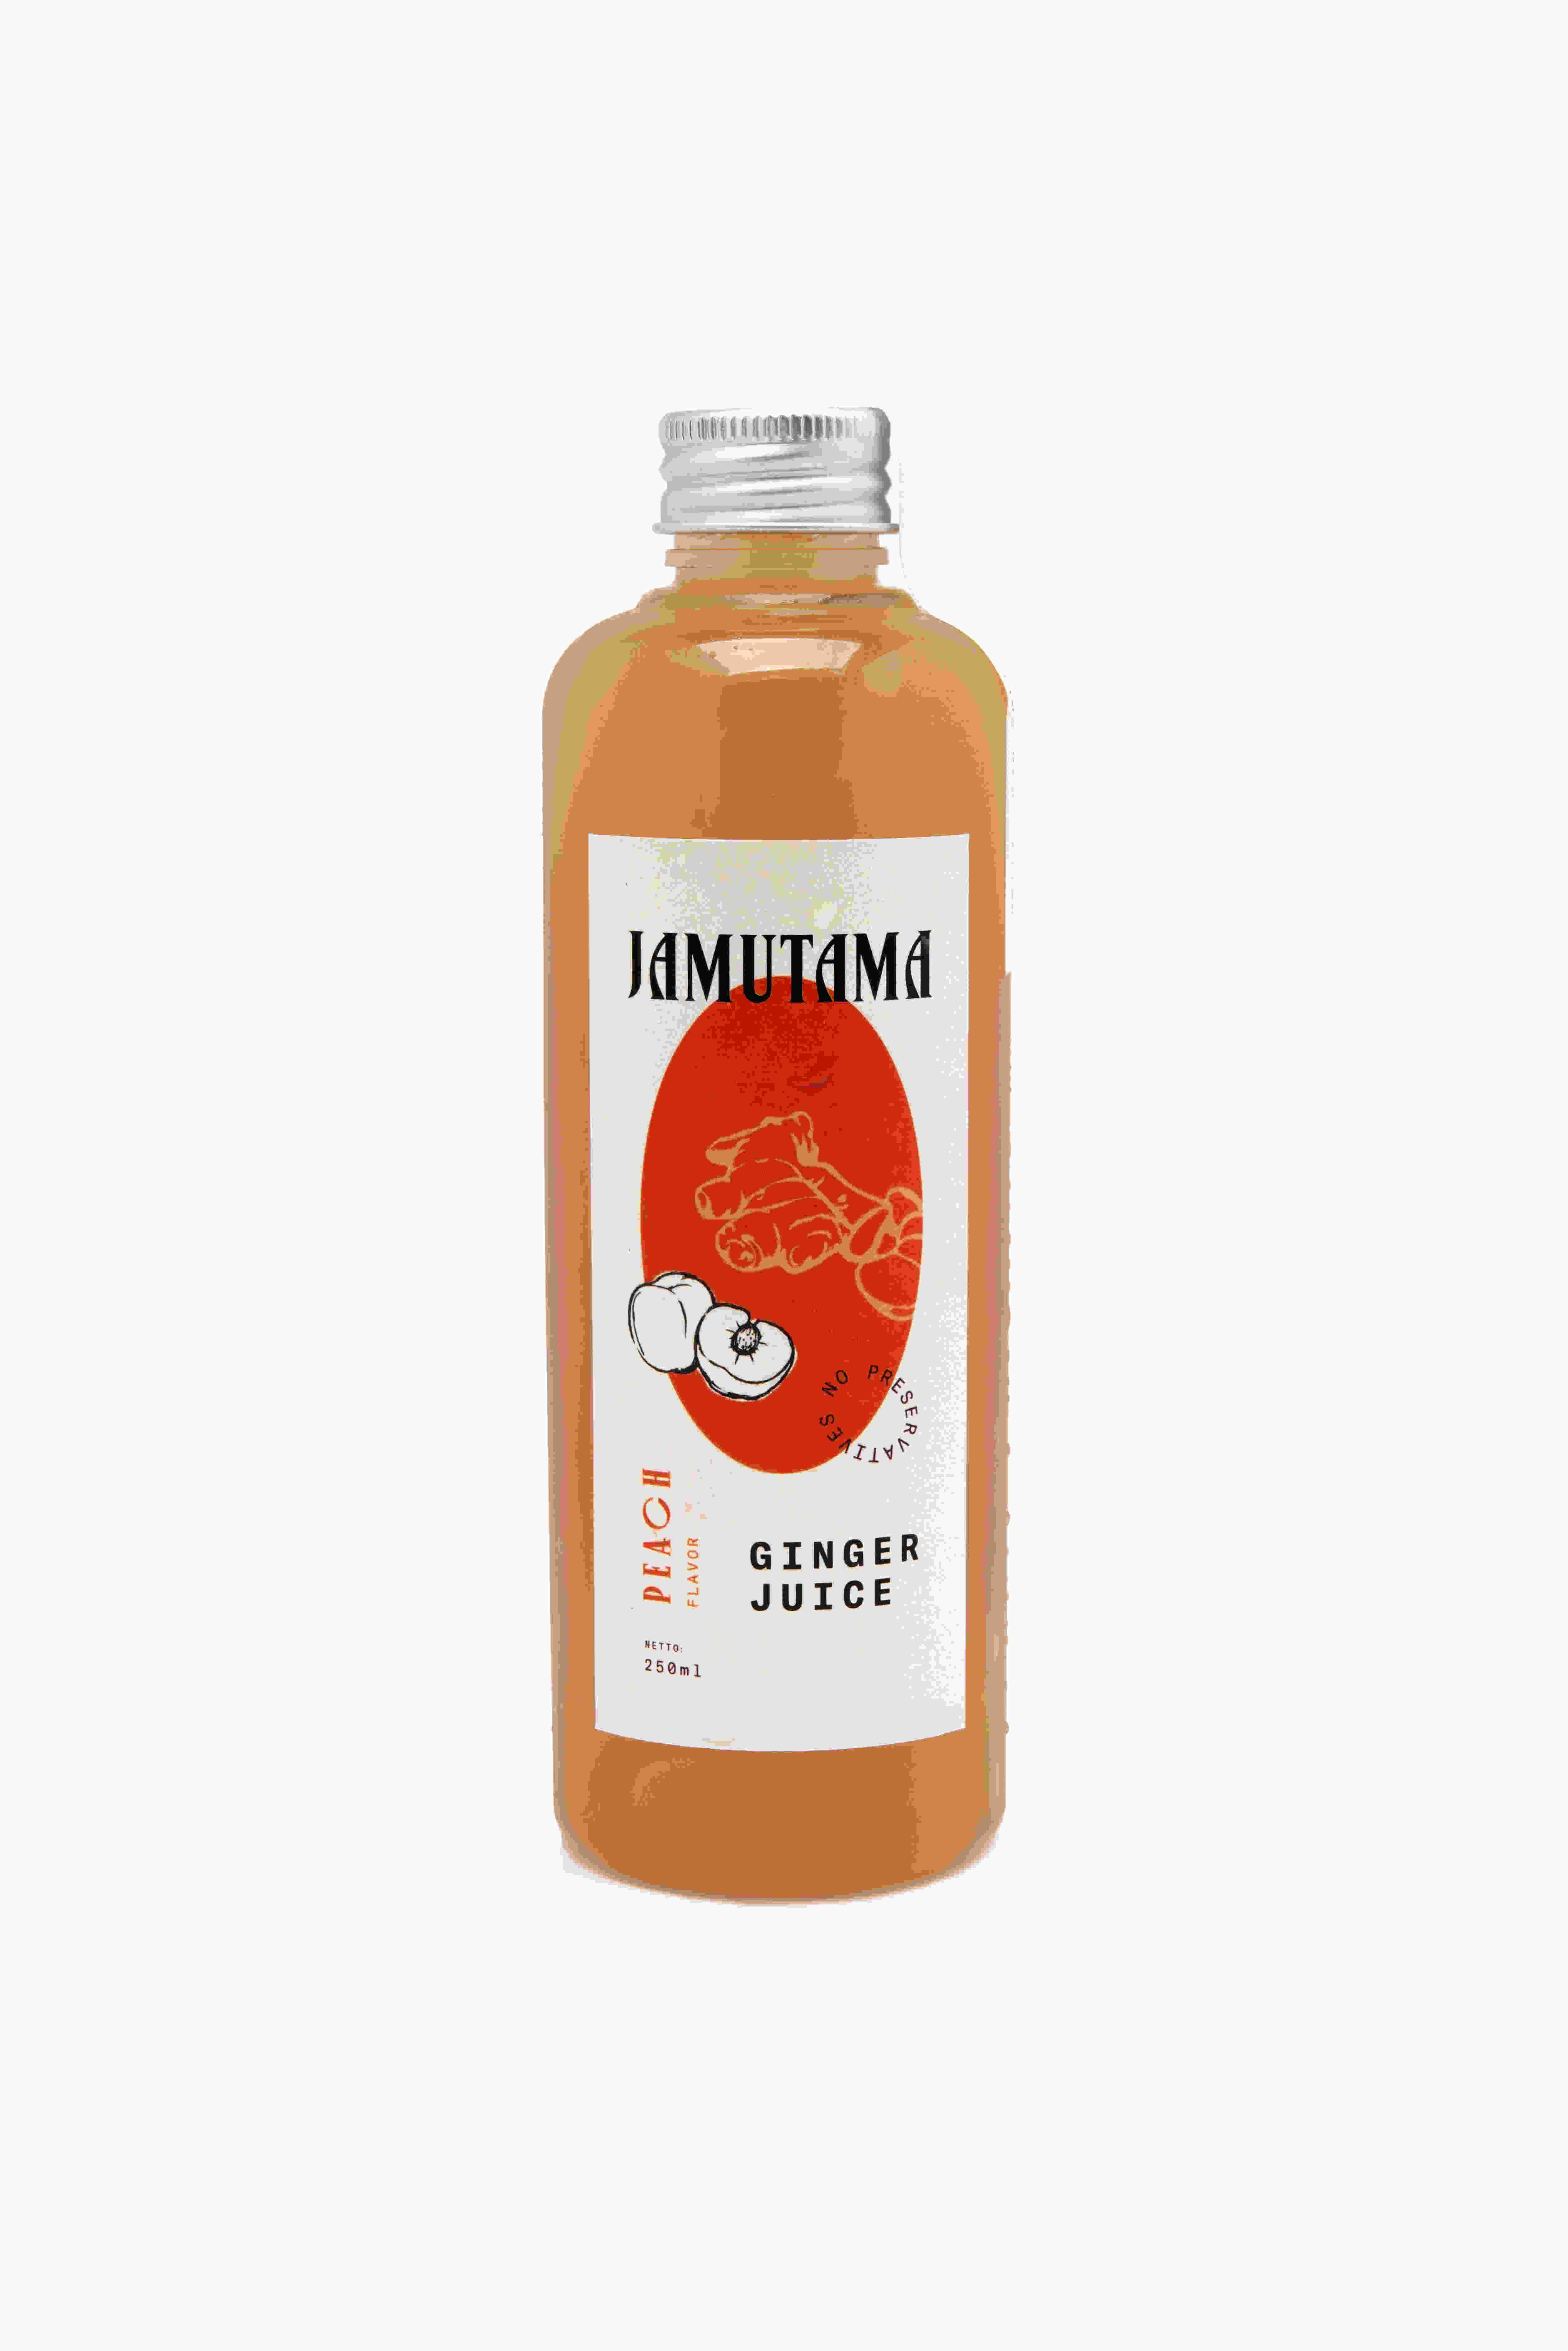 Jamutama Ginger Juice Peach Flavor / Jahe Rasa Persik (250ml)